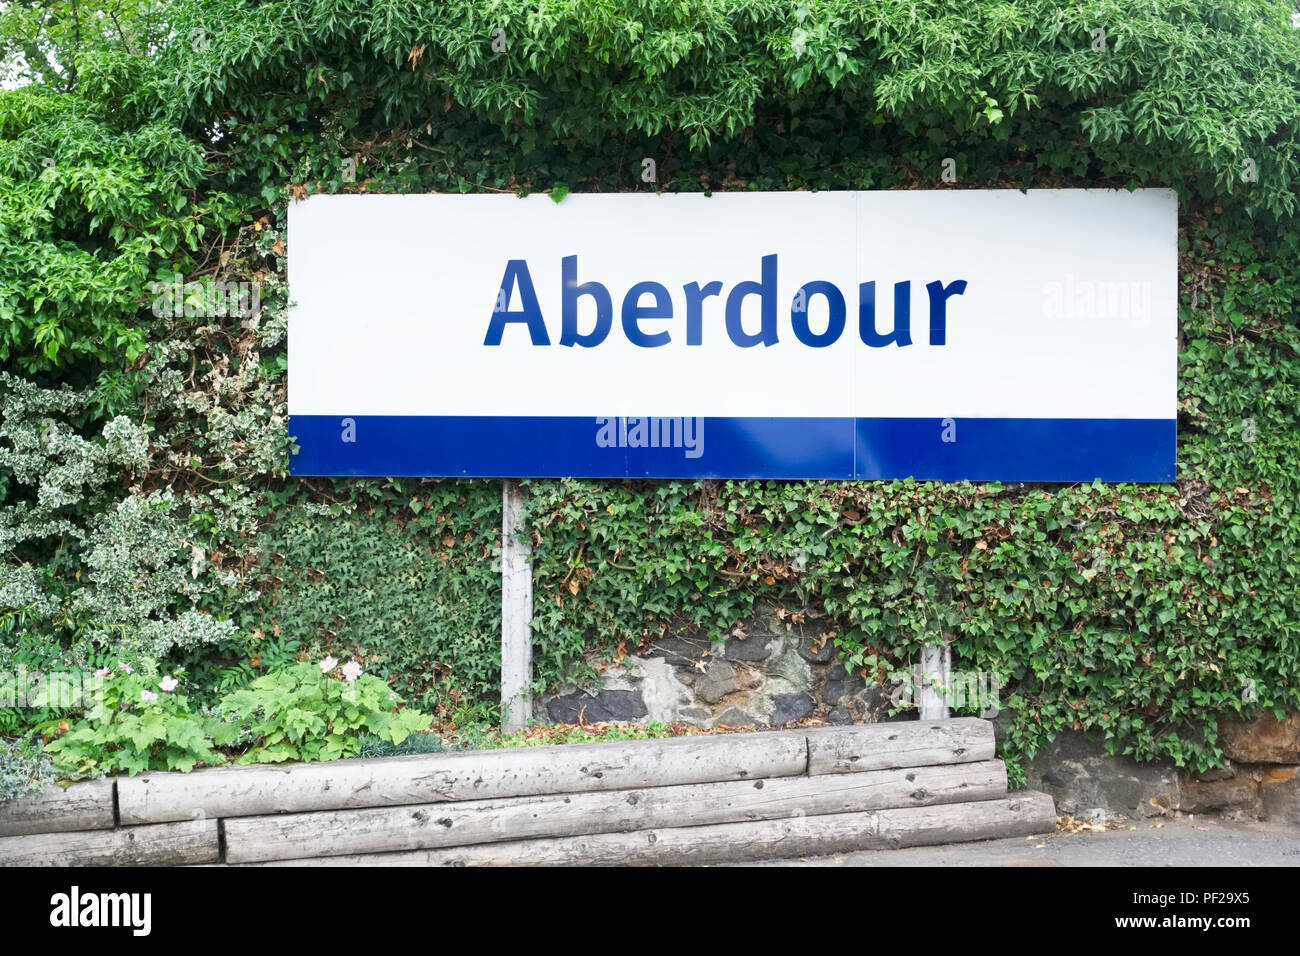 Aberdour town sign on the Scottish Fife coast Stock Photo